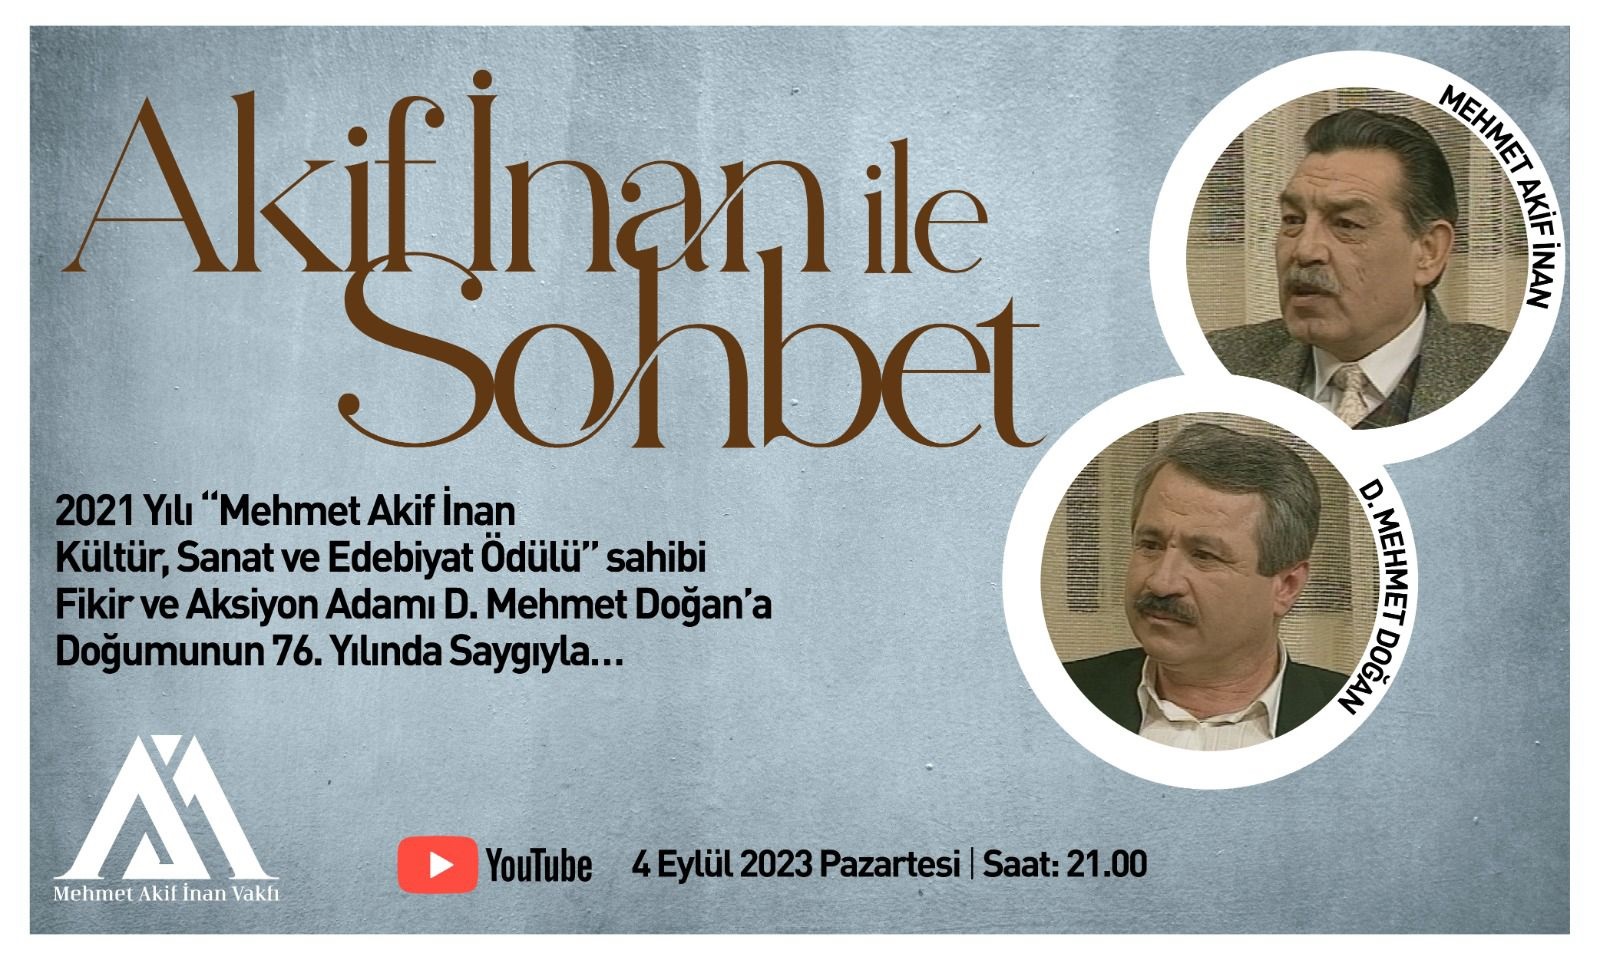 Mehmet Akif İnan'ın D. Mehmet Doğan ile yapılan Söyleşisi Yayınlanacak